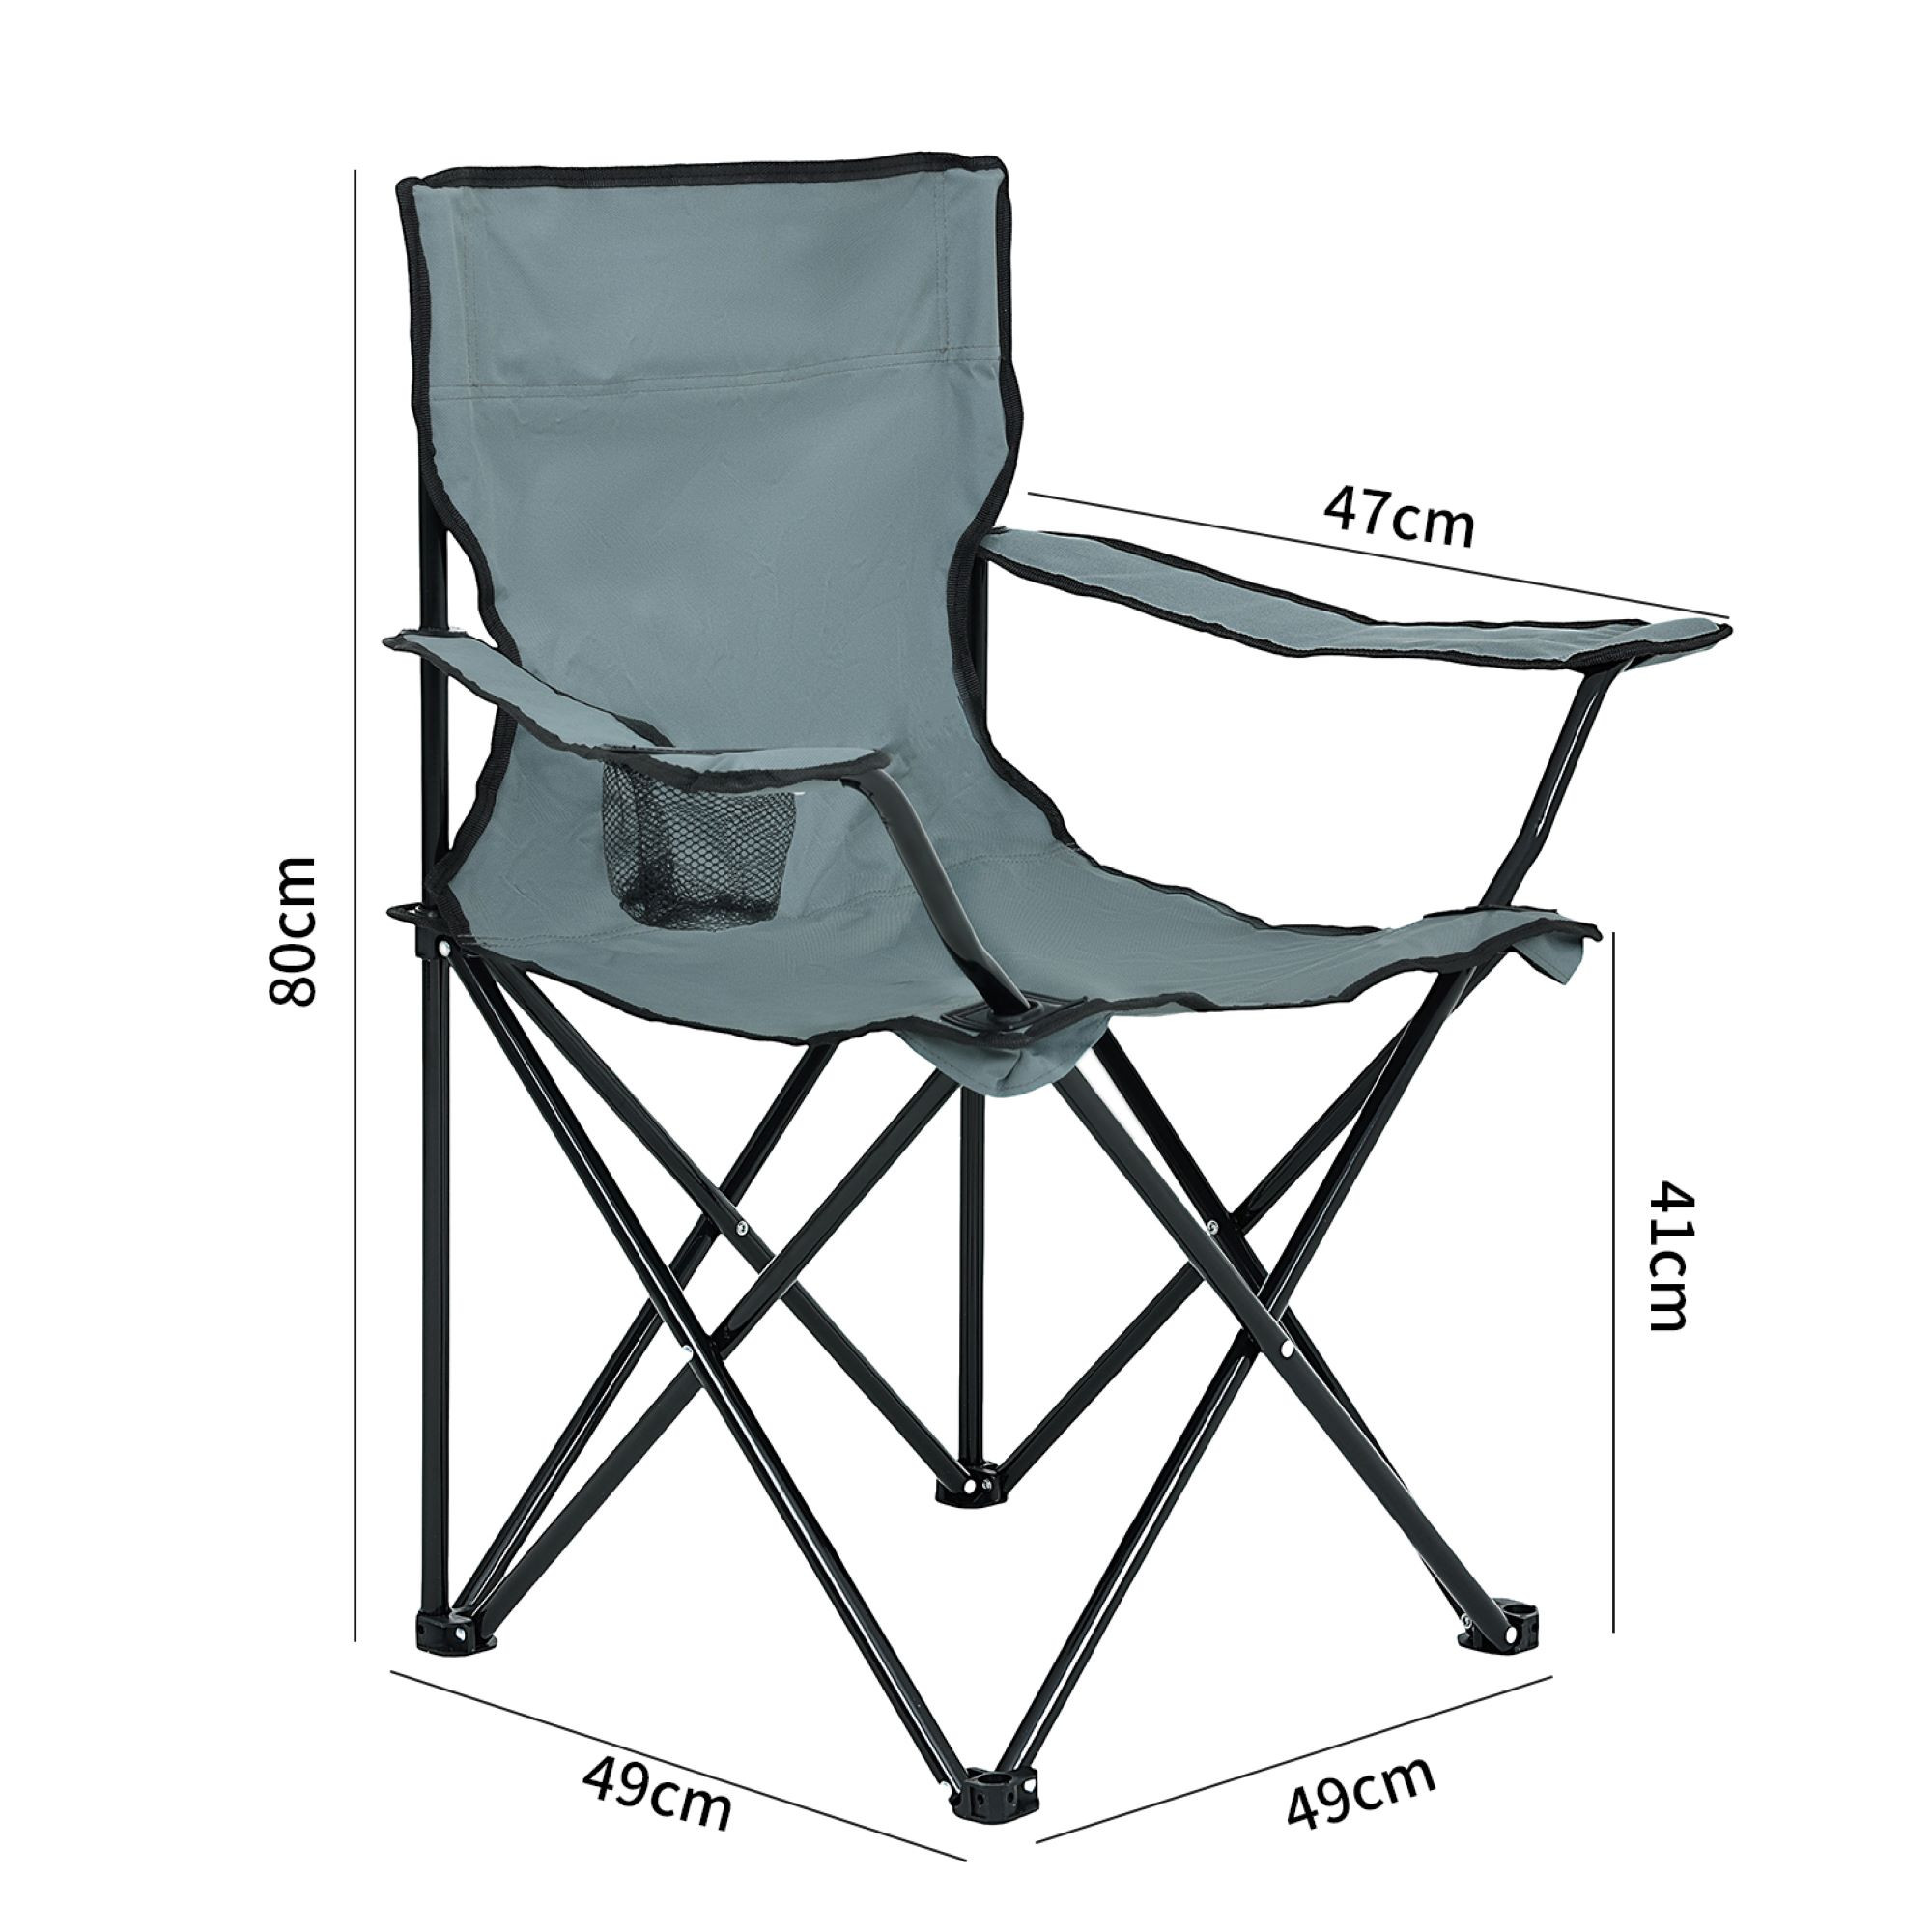 Wymiary 3D - Zestaw 2 składanych krzeseł kempingowych ANTER w kolorze szarym - AKORD Fabryka Mebli